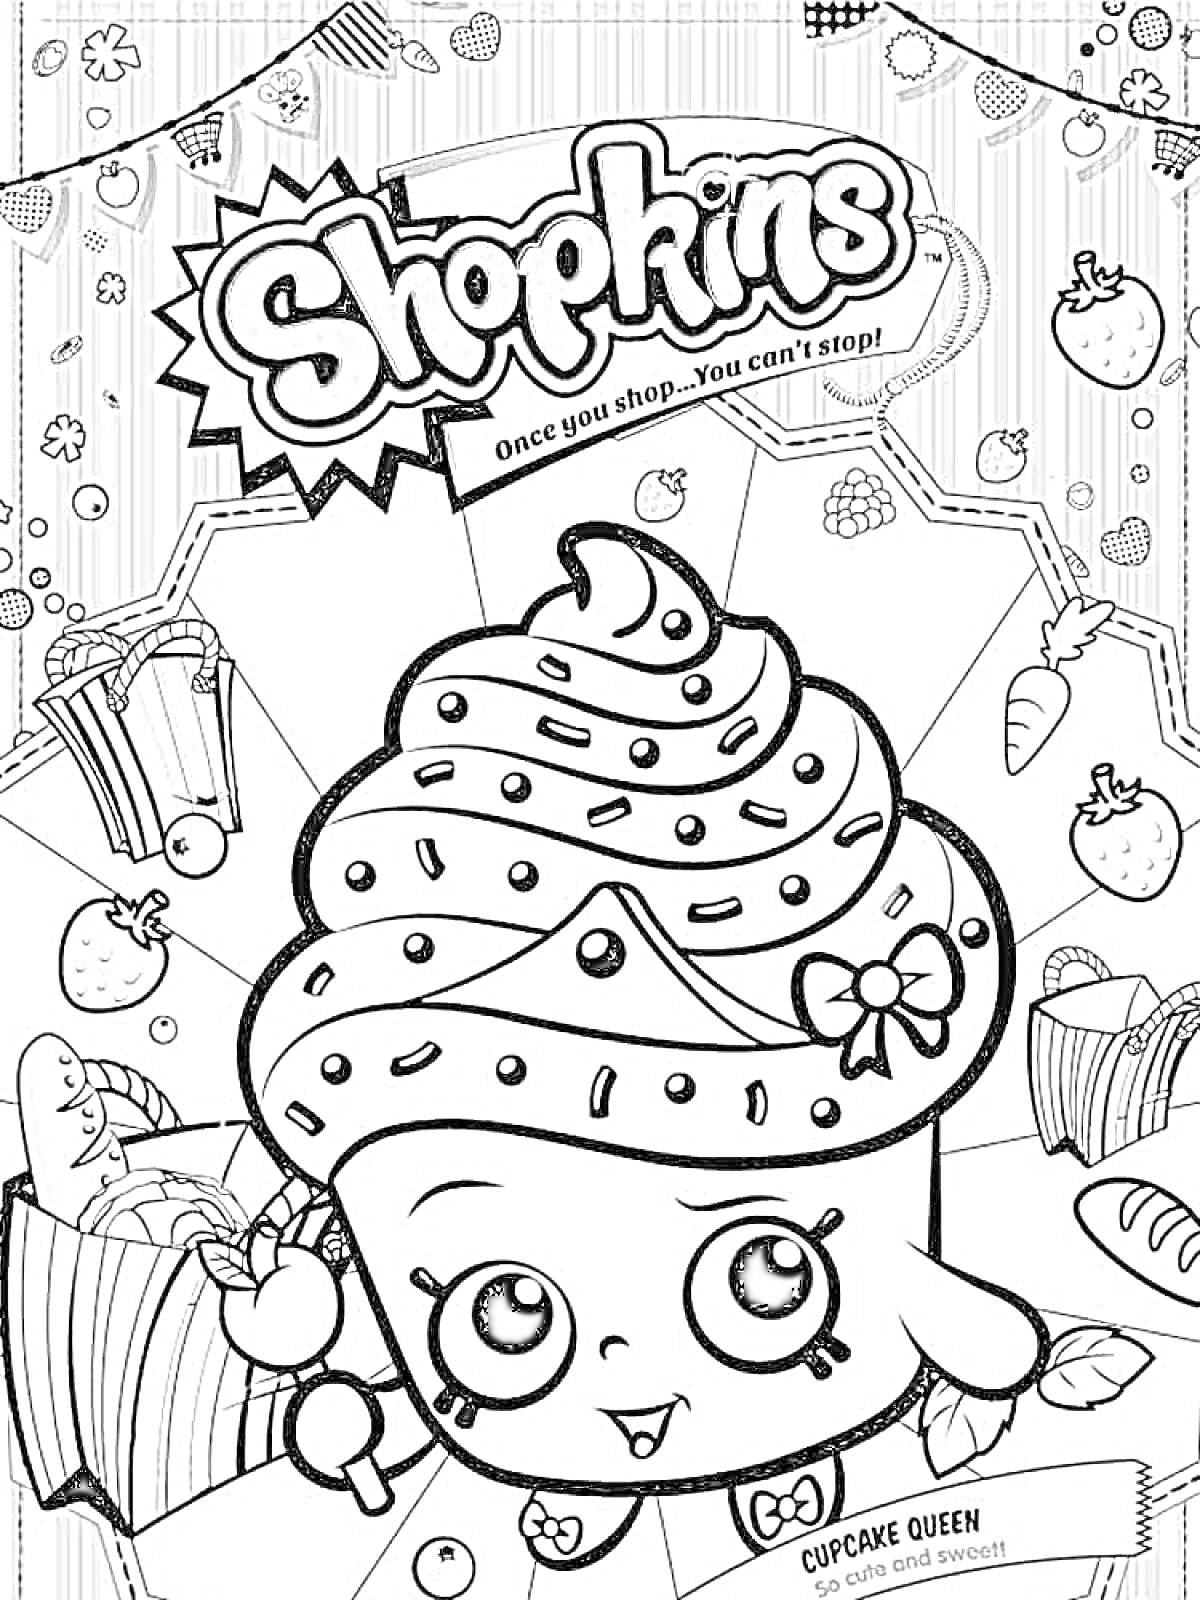 Раскраска Shopkins: капкейк с ягодами, бананами и леденцом; полосатый фон с изображениями летящих звёзд и конфет